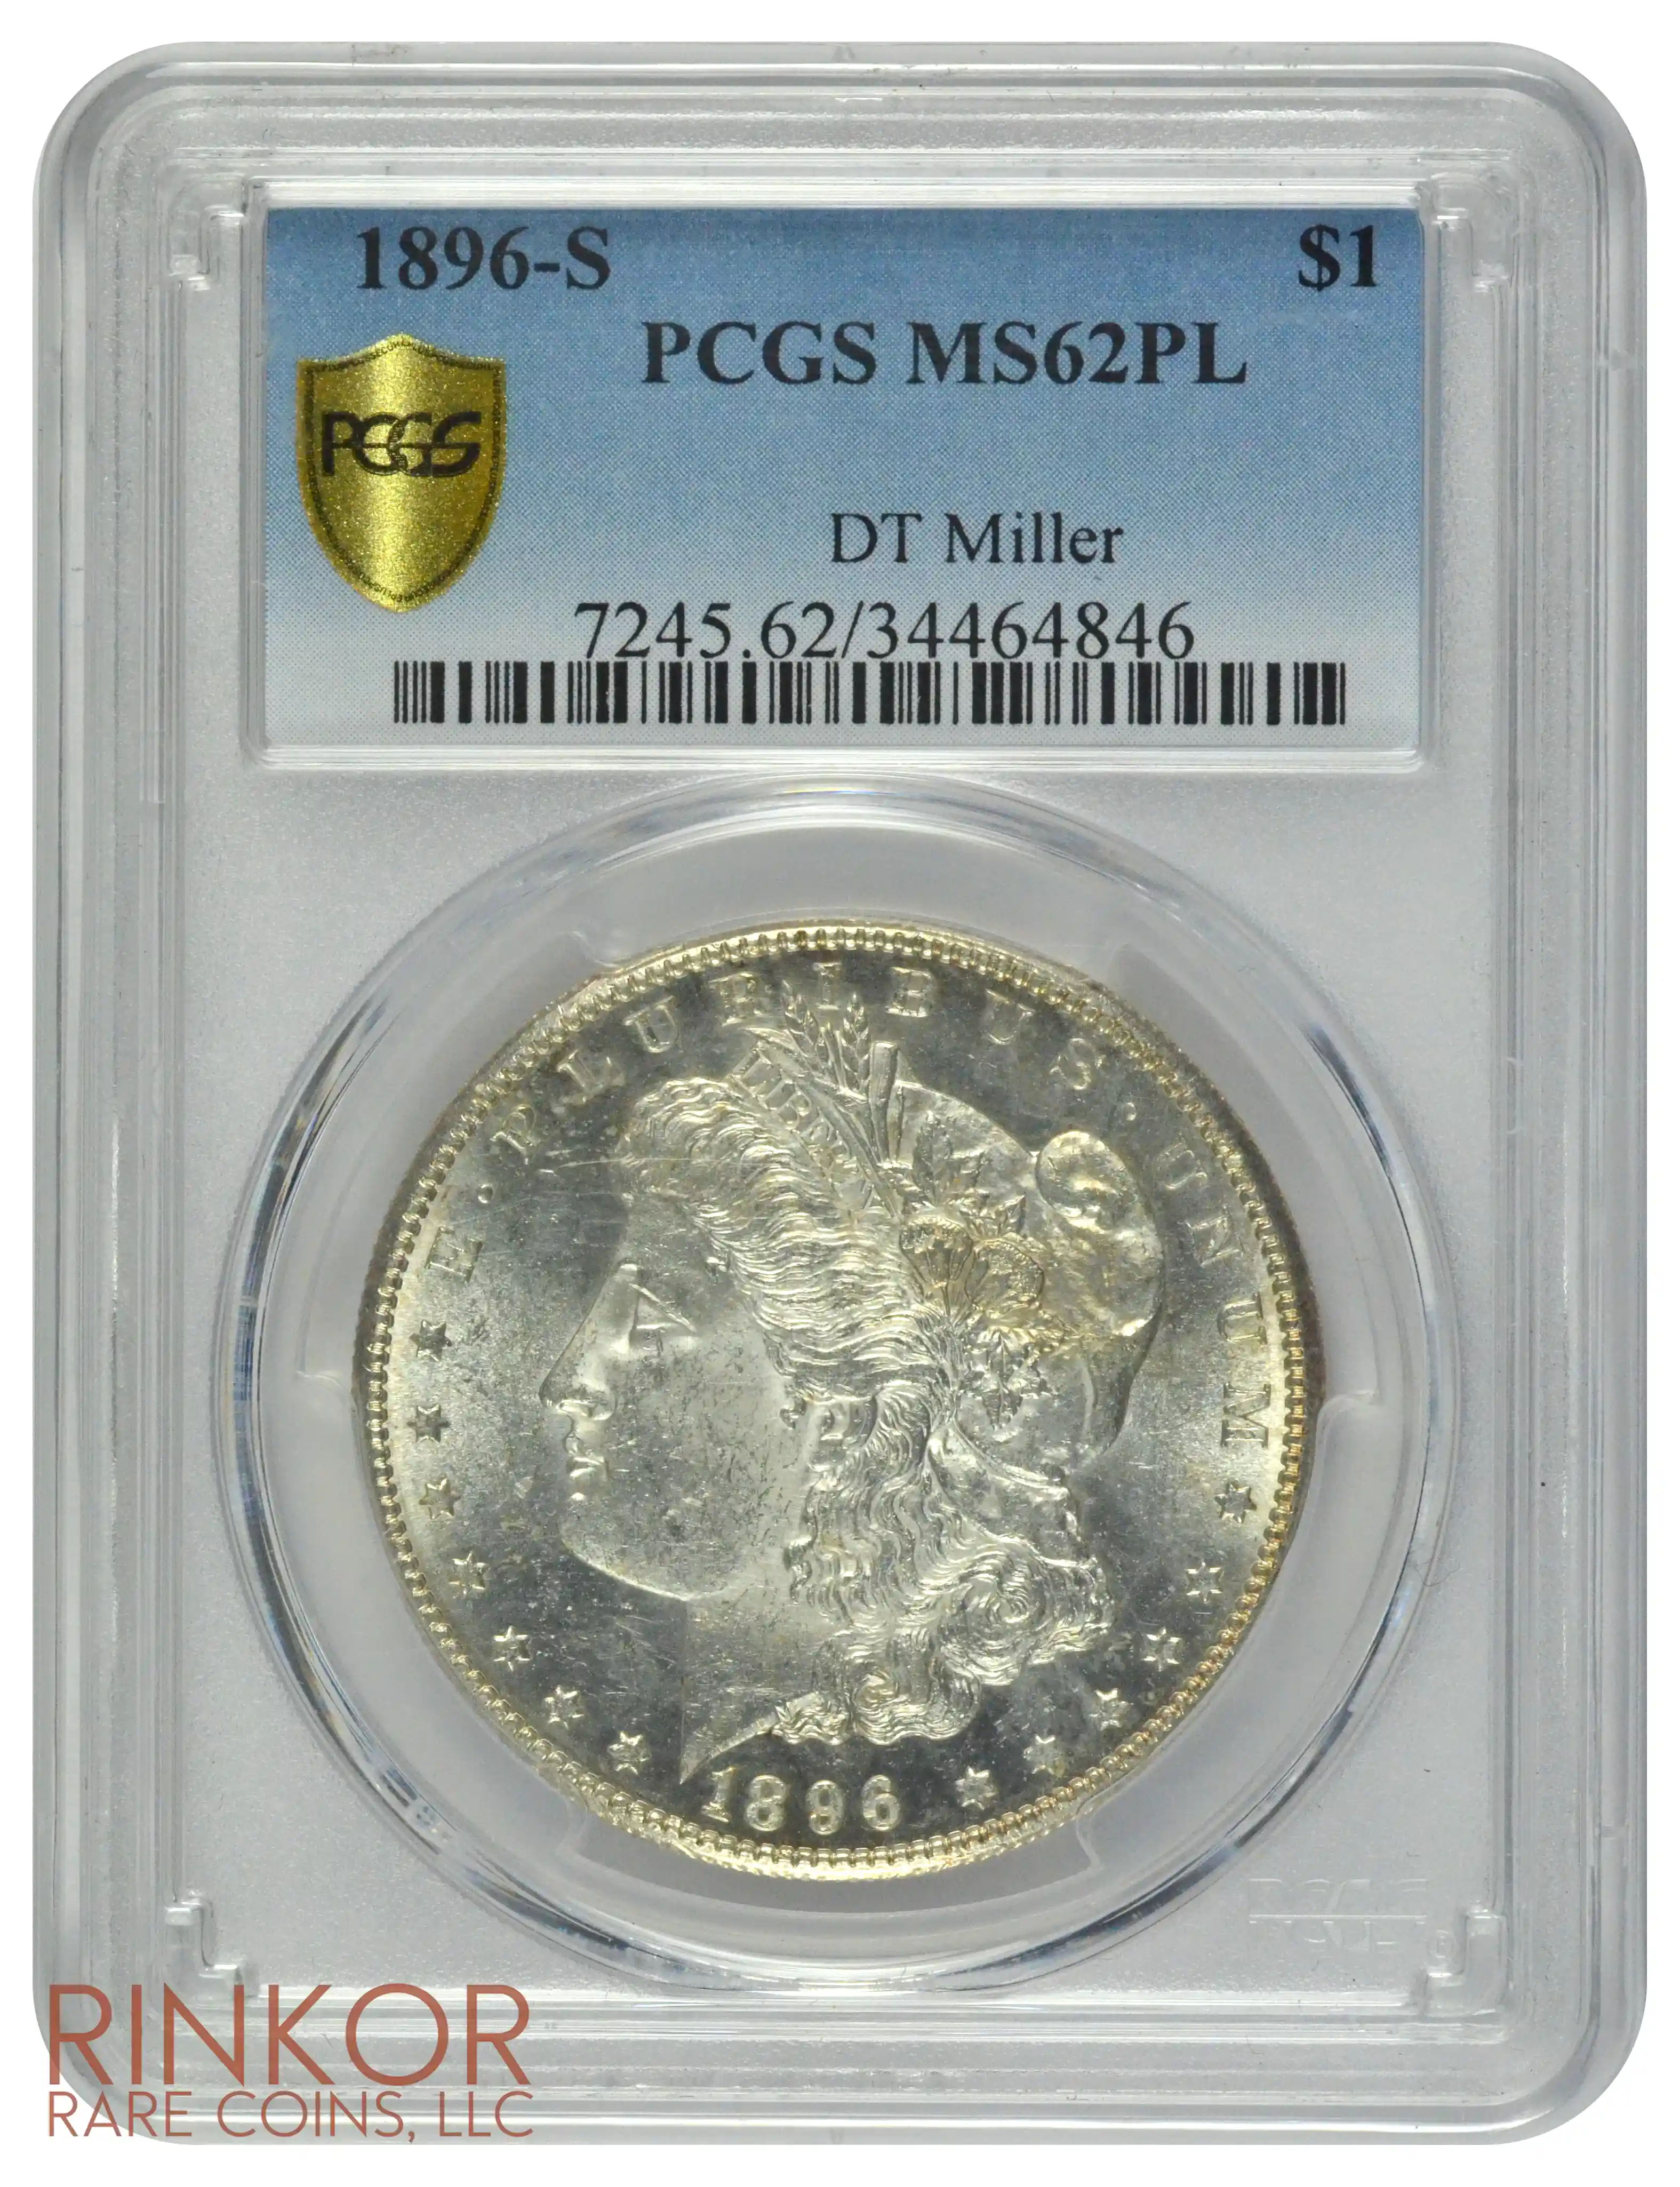 1896-S $1 PCGS